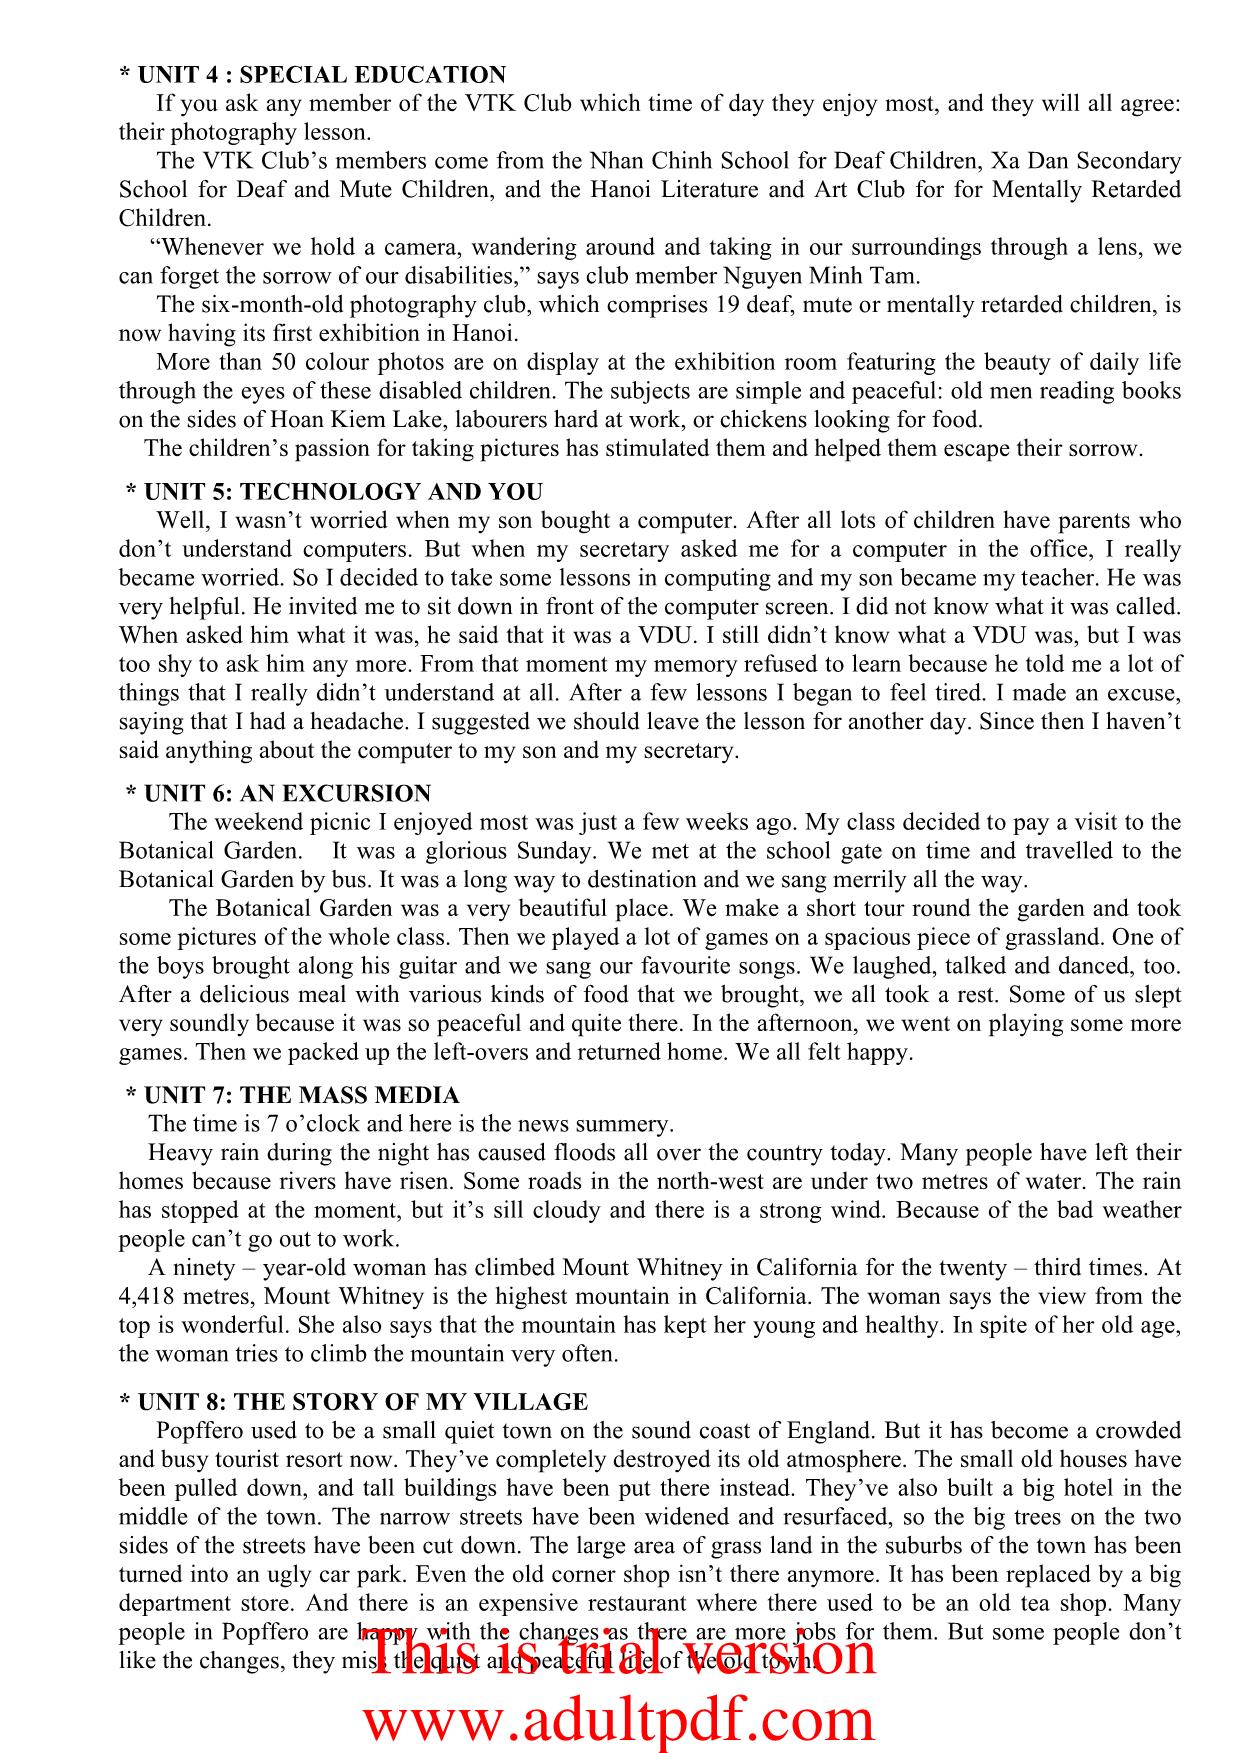 Tiếng Anh - Tapescripts 10 trang 2